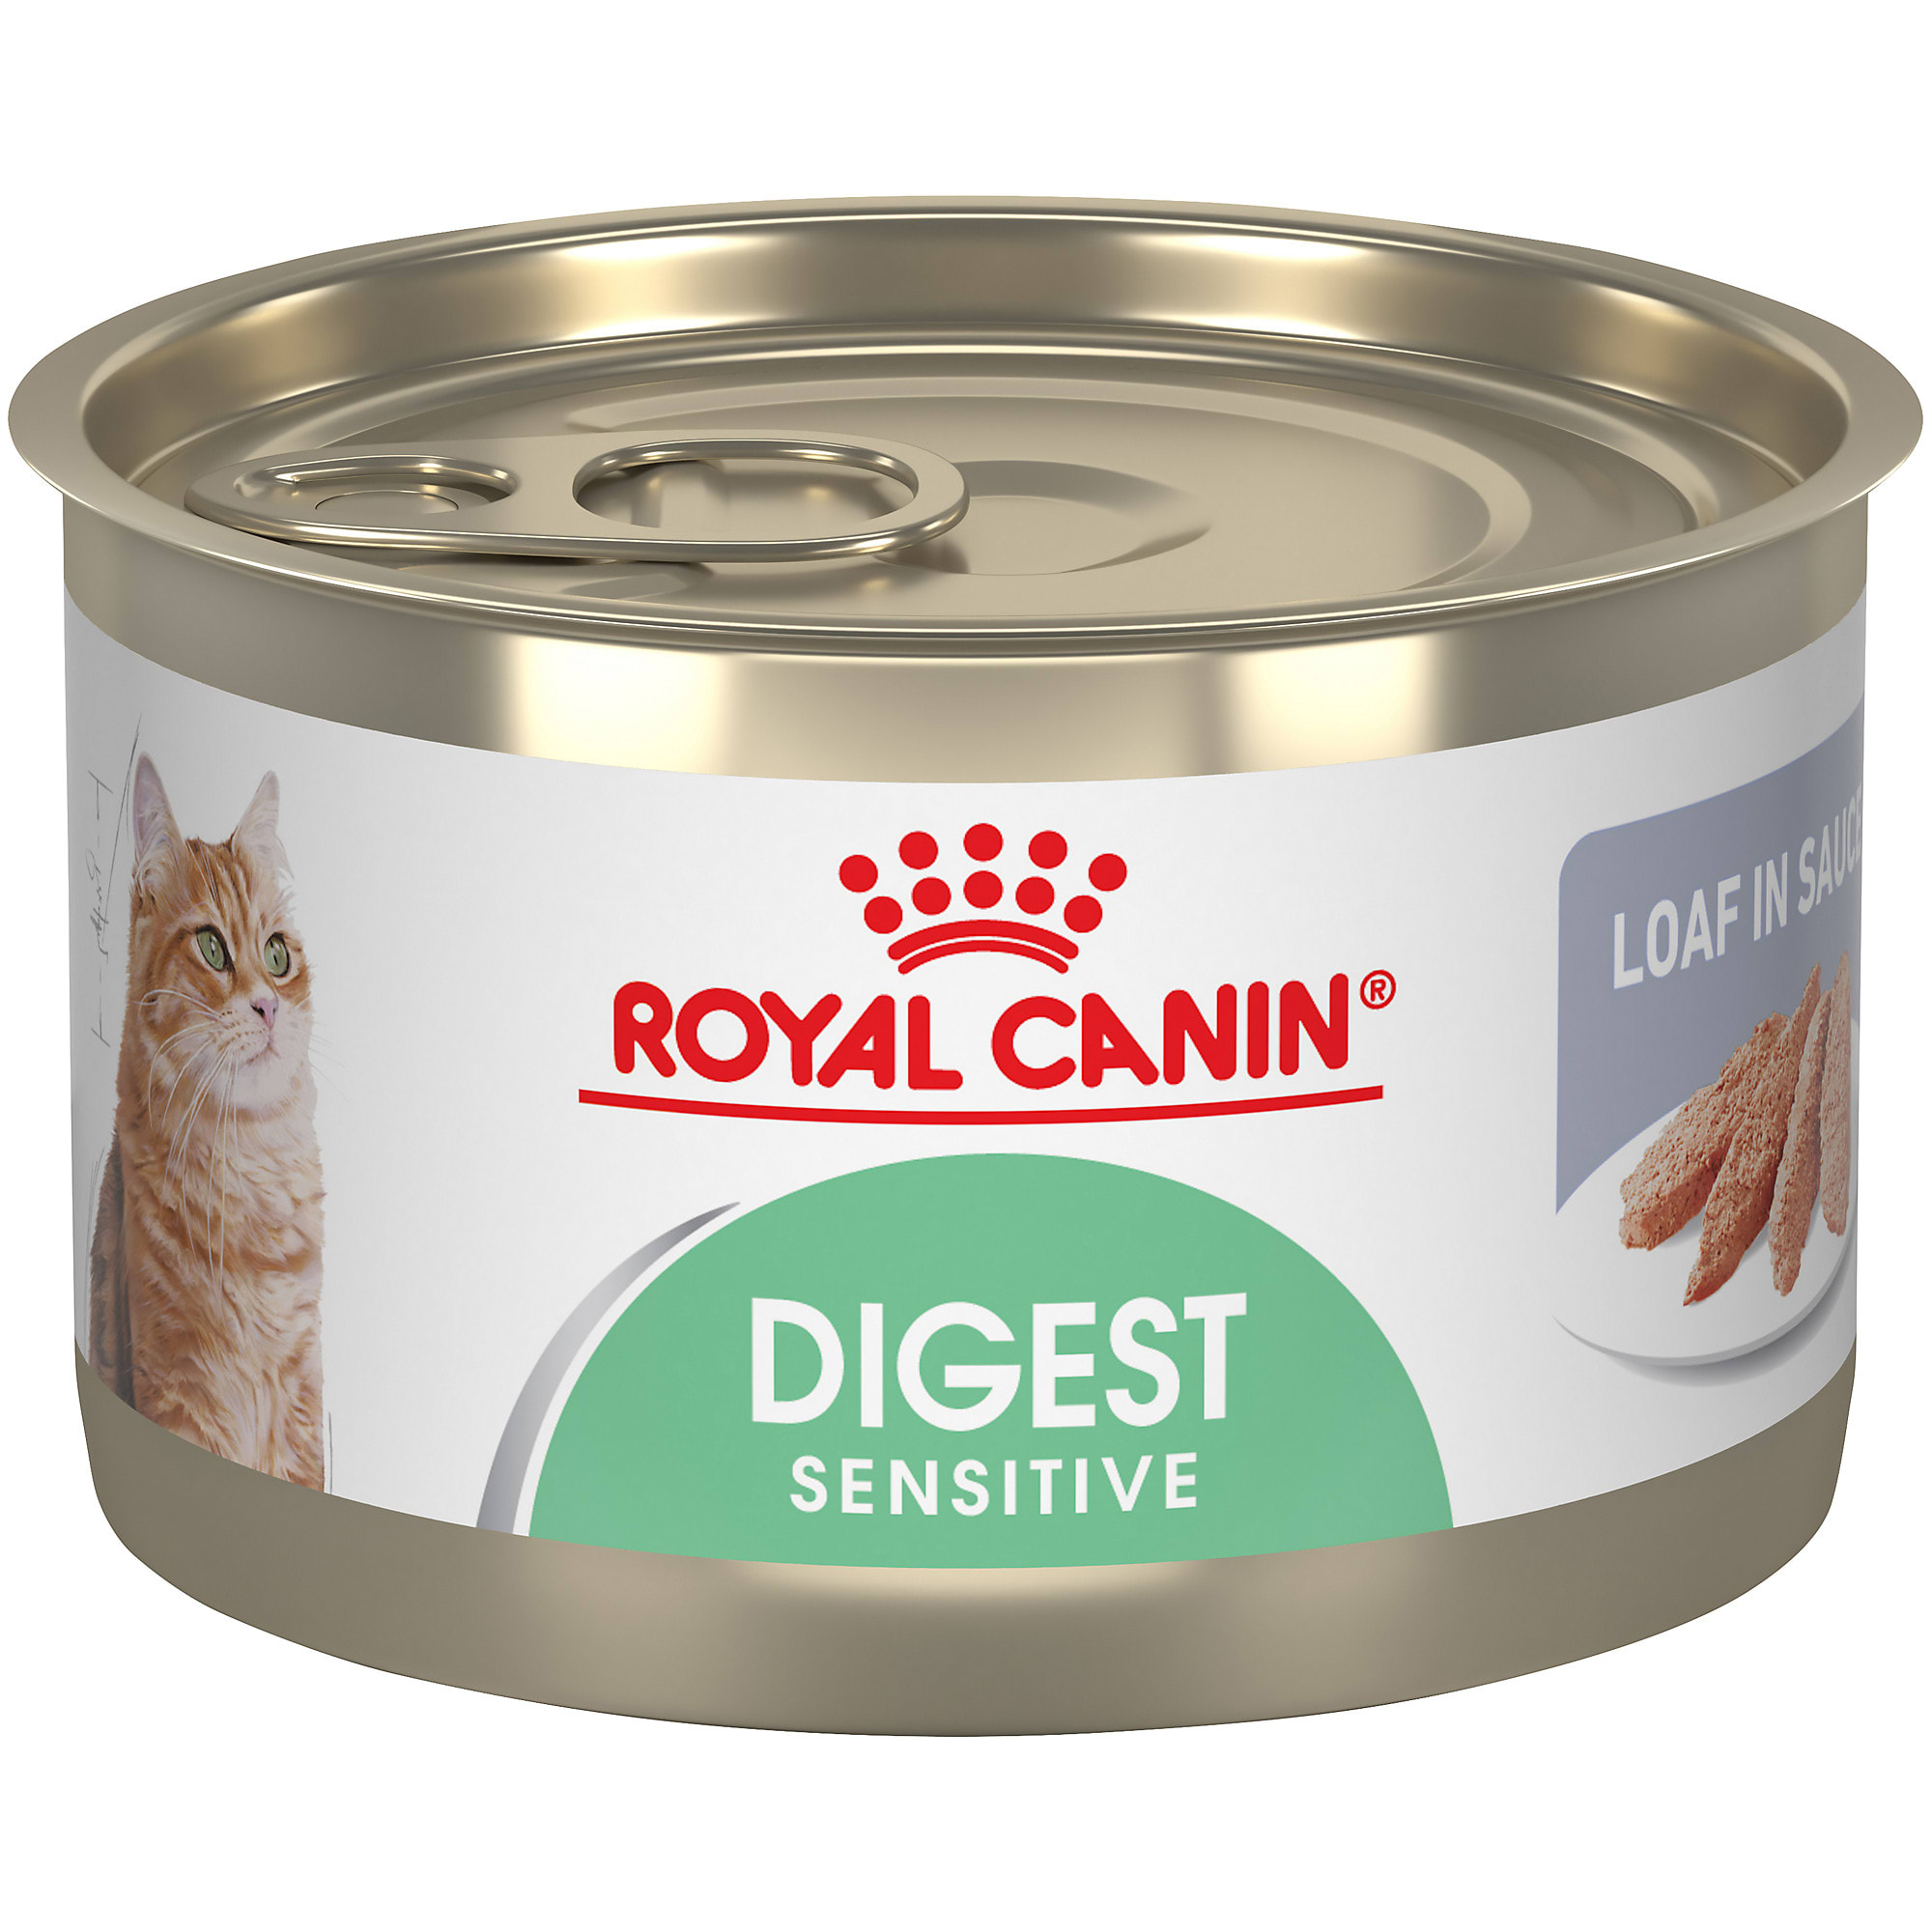 Royal Canin Digest Sensitive Loaf in Sauce Wet Cat Food, 5.1 oz., Case ...